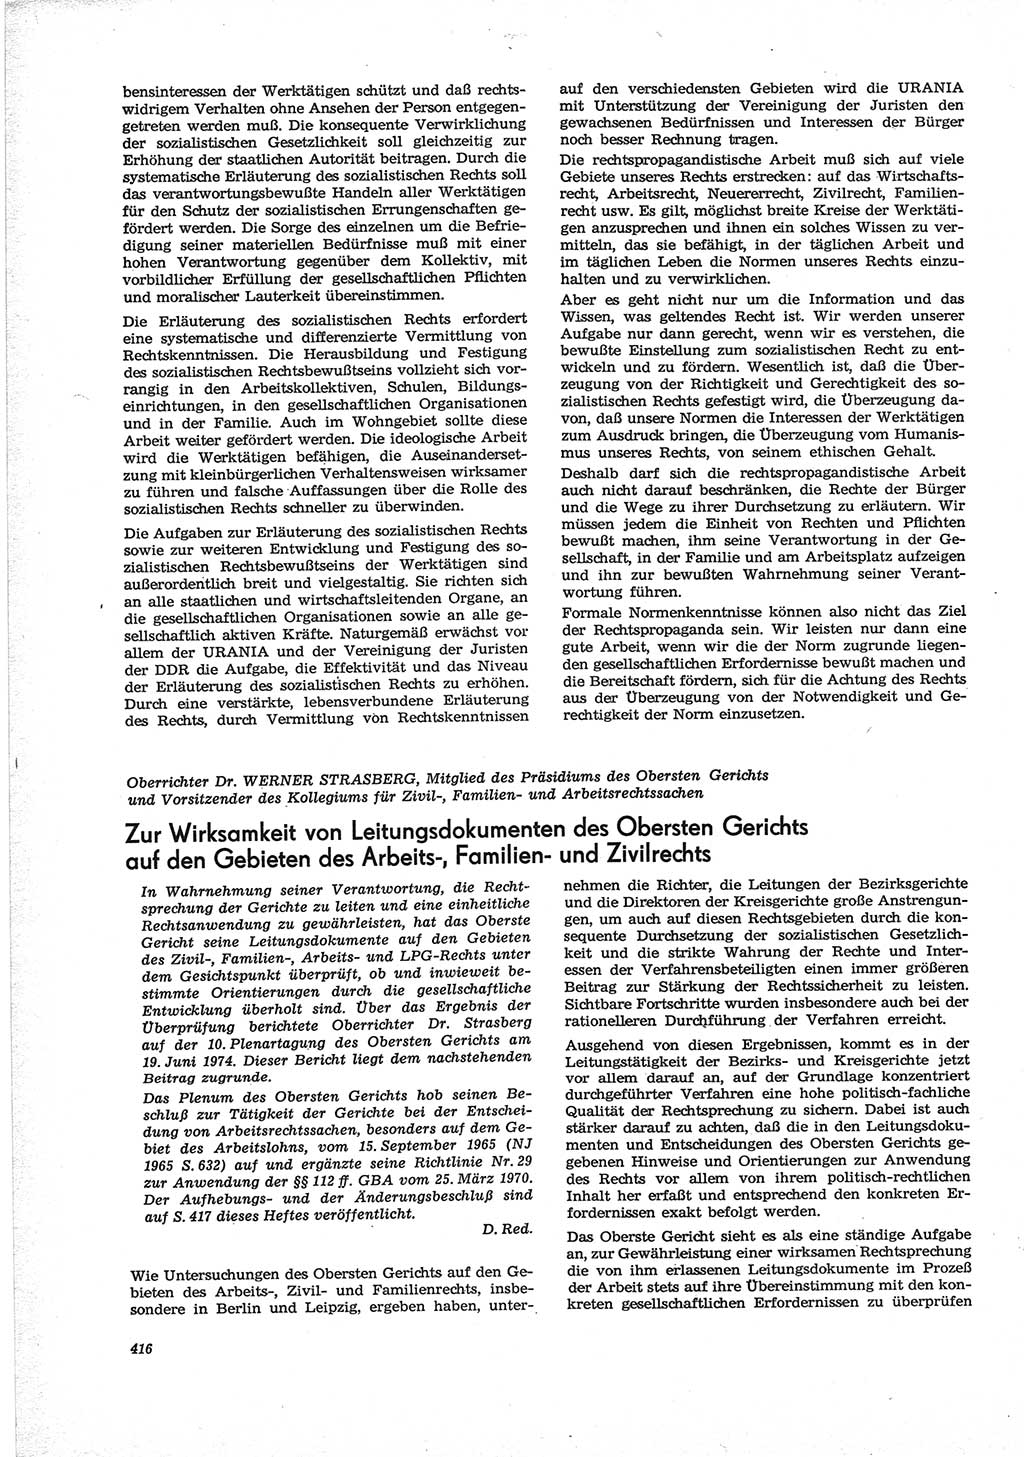 Neue Justiz (NJ), Zeitschrift für Recht und Rechtswissenschaft [Deutsche Demokratische Republik (DDR)], 28. Jahrgang 1974, Seite 416 (NJ DDR 1974, S. 416)